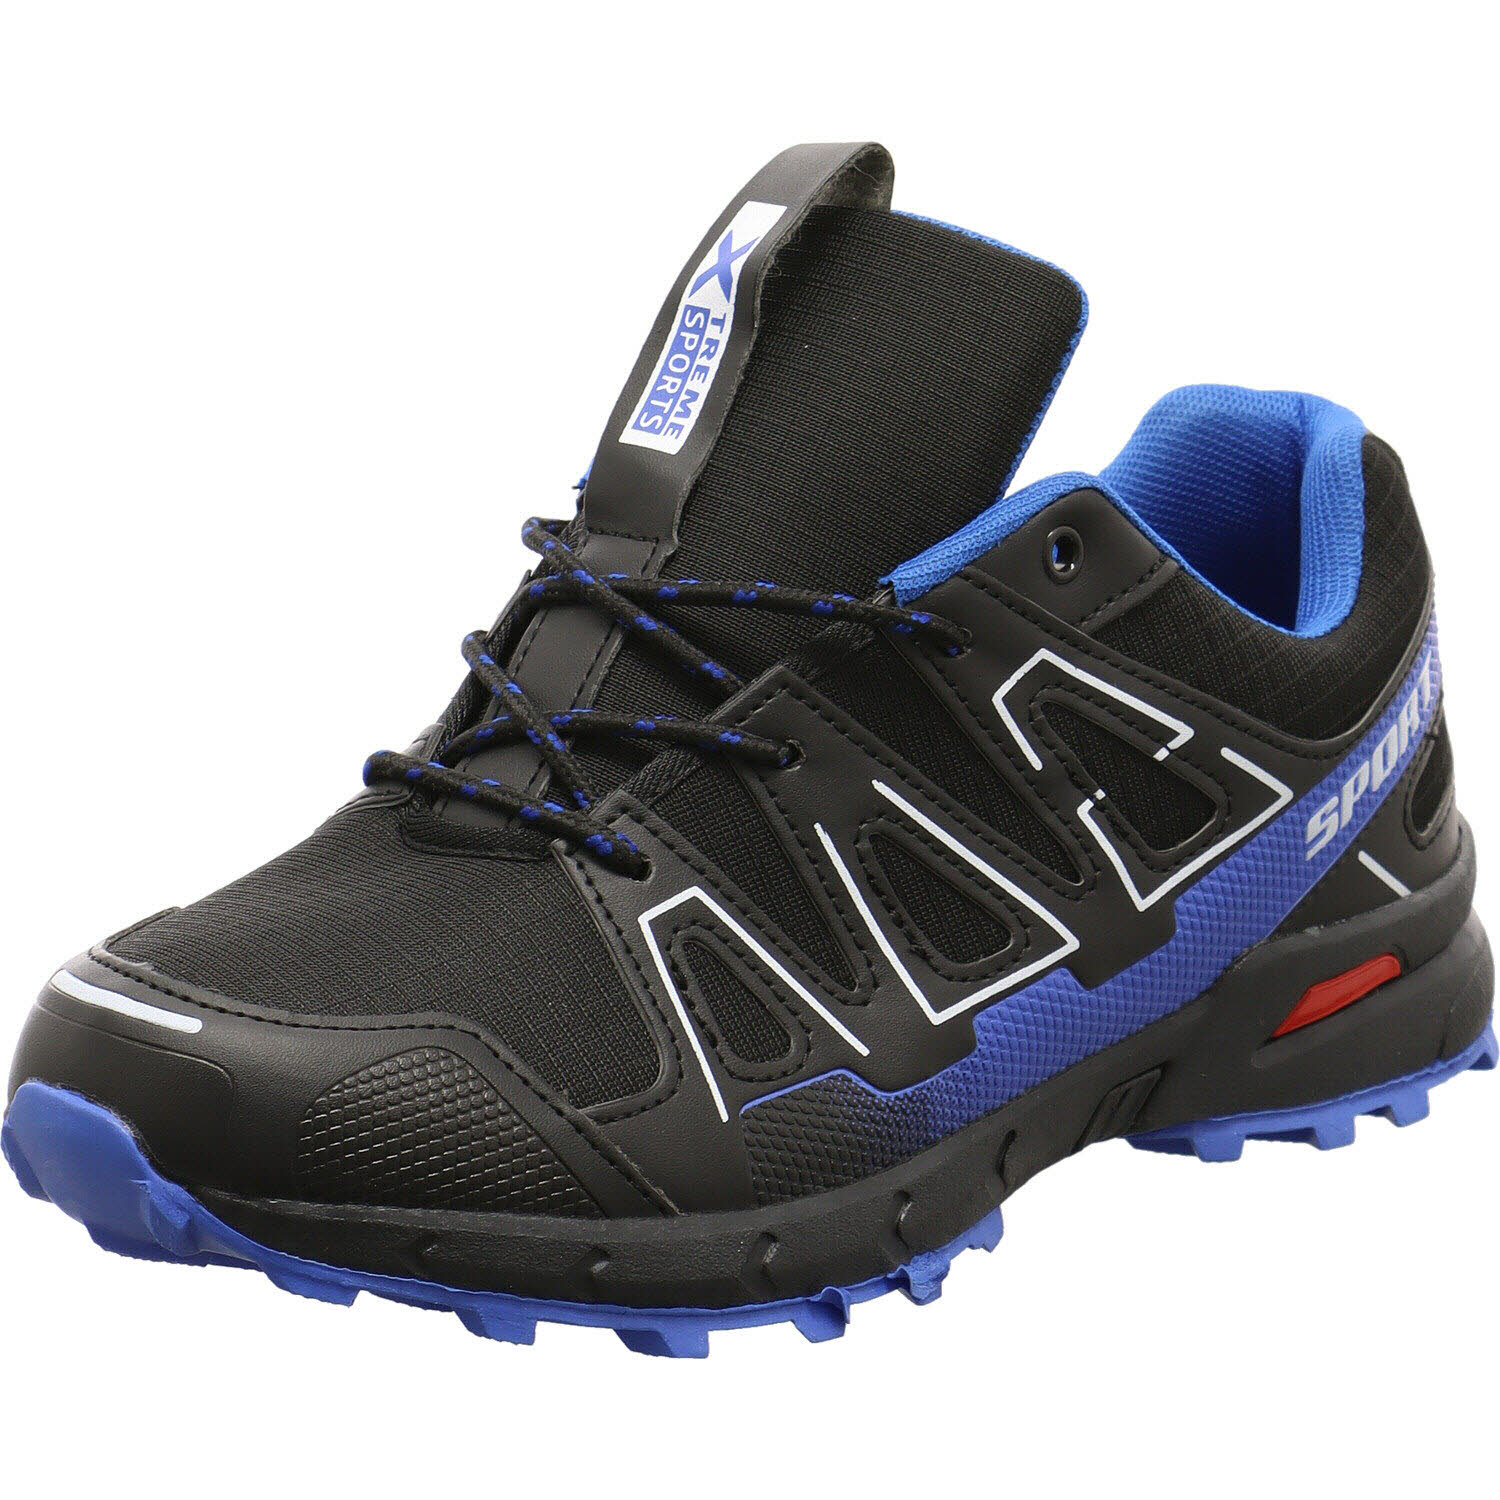 Herren Trekking Schuh von Xtreme Sports auch in Schwarz erhältlich